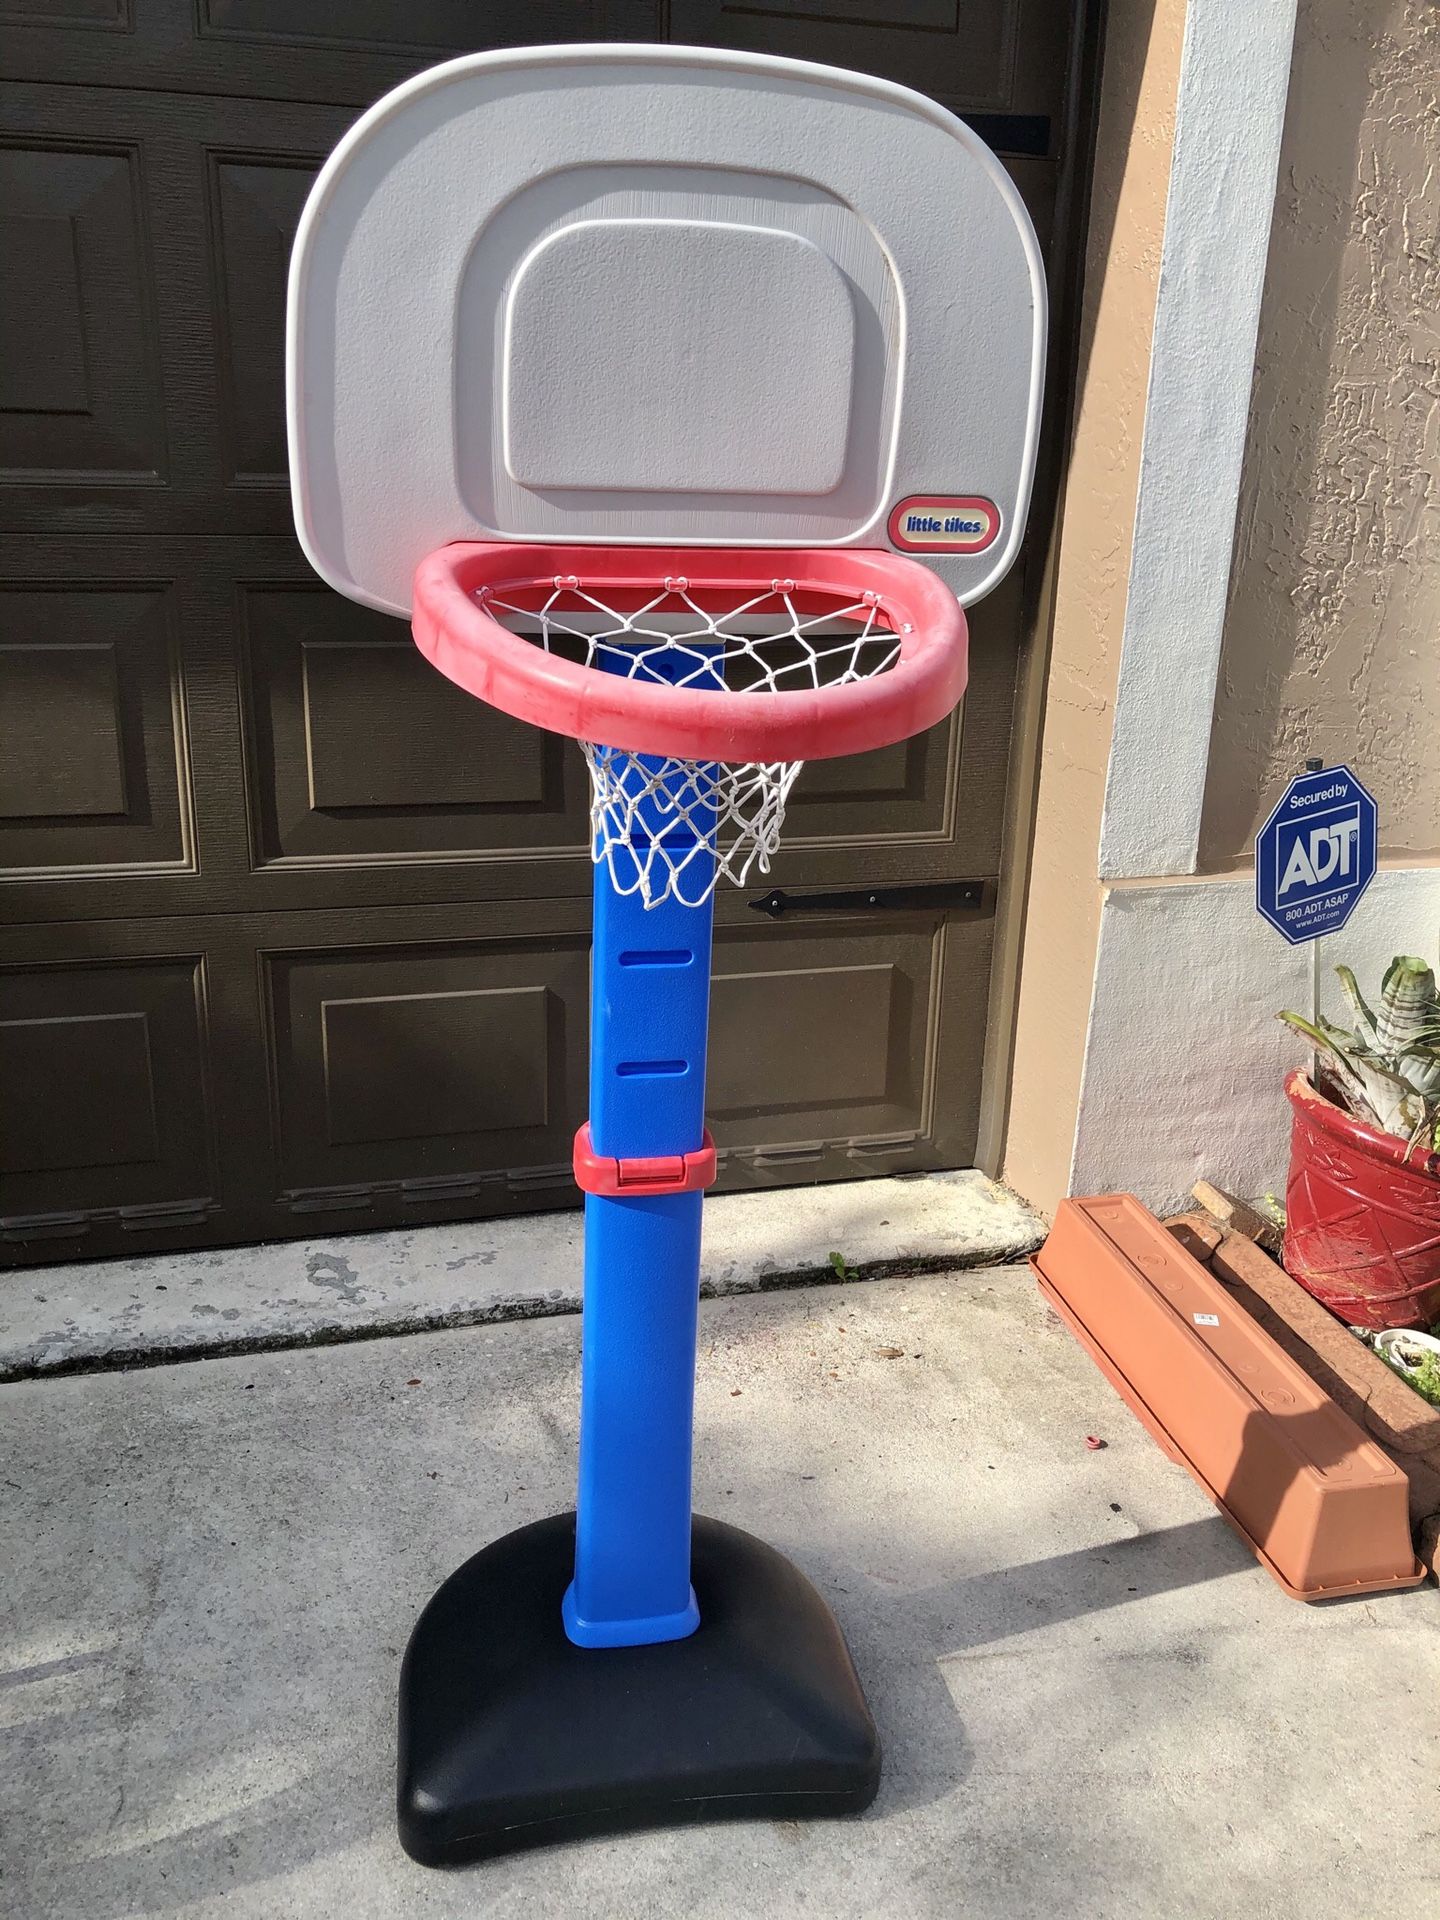 Little tikes kids adjustable basketball hoop